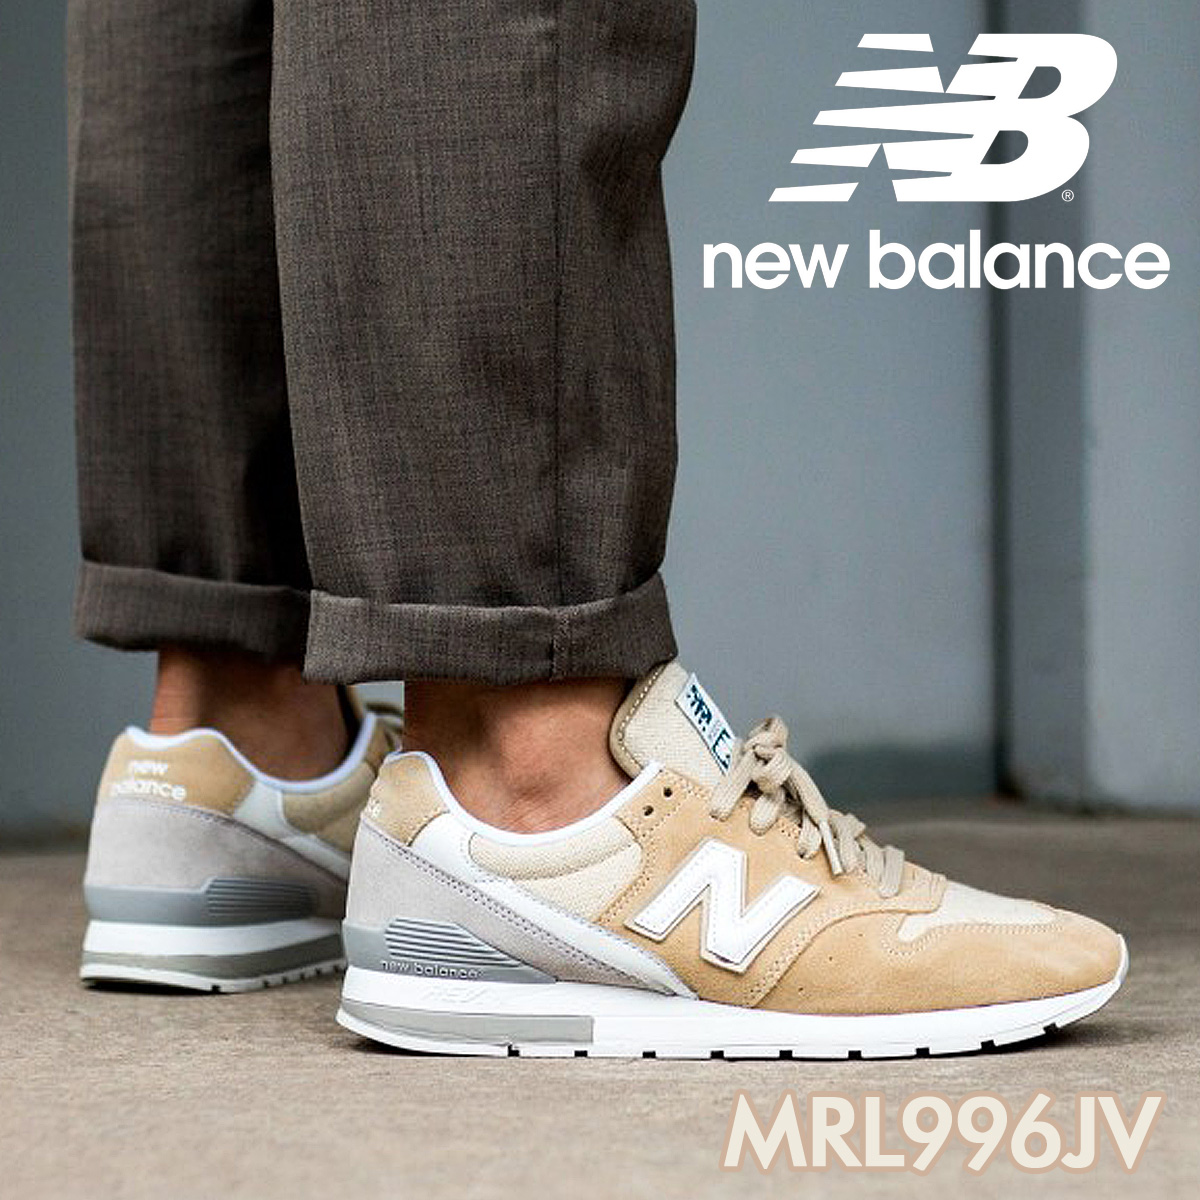 new balance 996 wearing